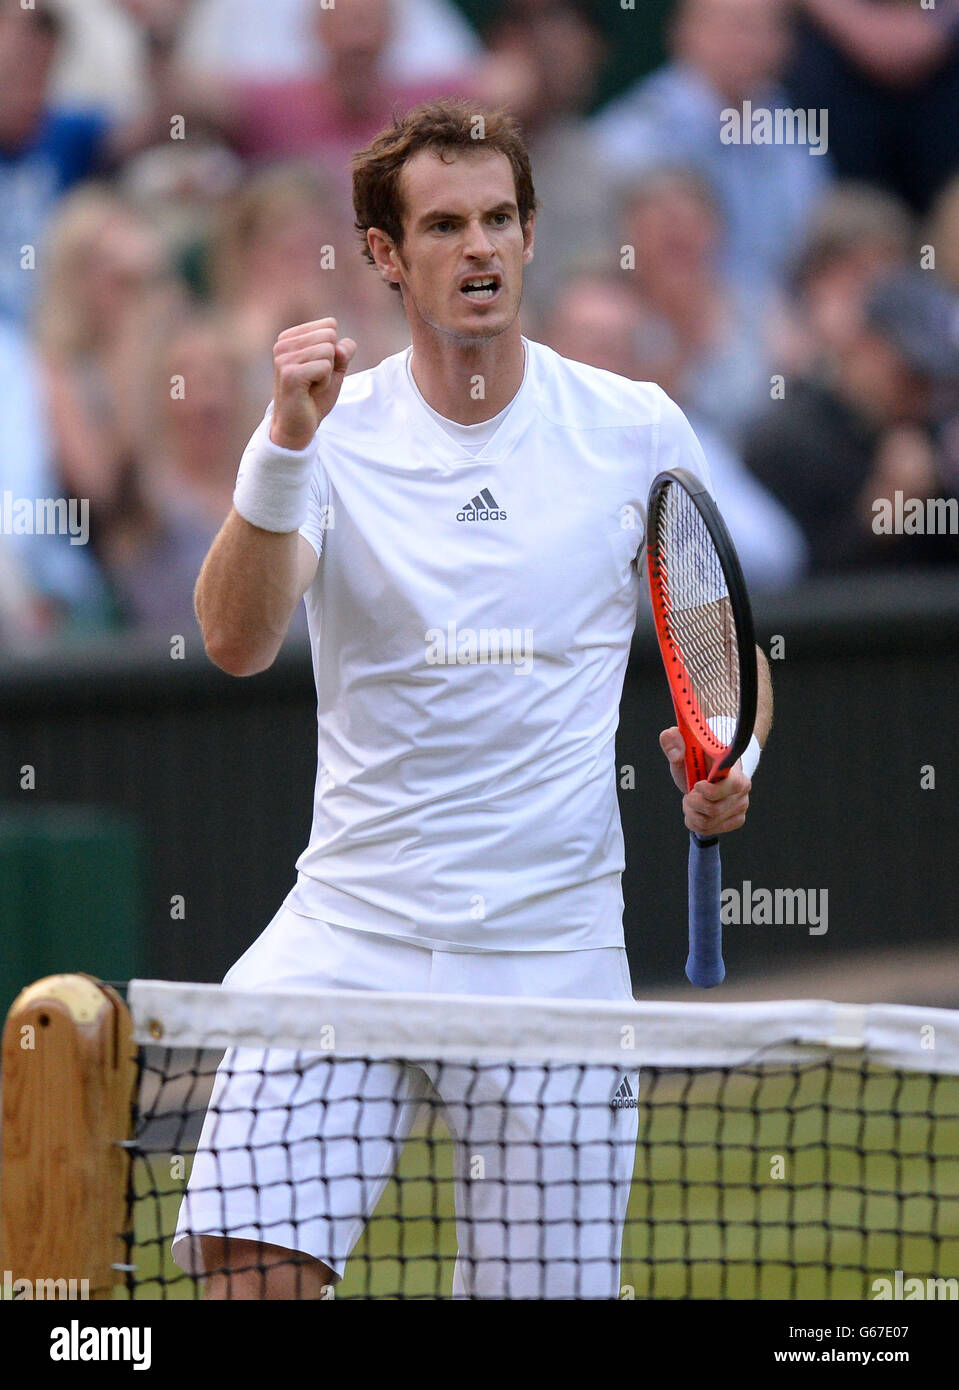 Andy Murray, en Grande-Bretagne, célèbre contre Jerzy Janowicz, en Pologne, lors du onze jour des championnats de Wimbledon au All England Lawn tennis and Croquet Club, Wimbledon. Banque D'Images